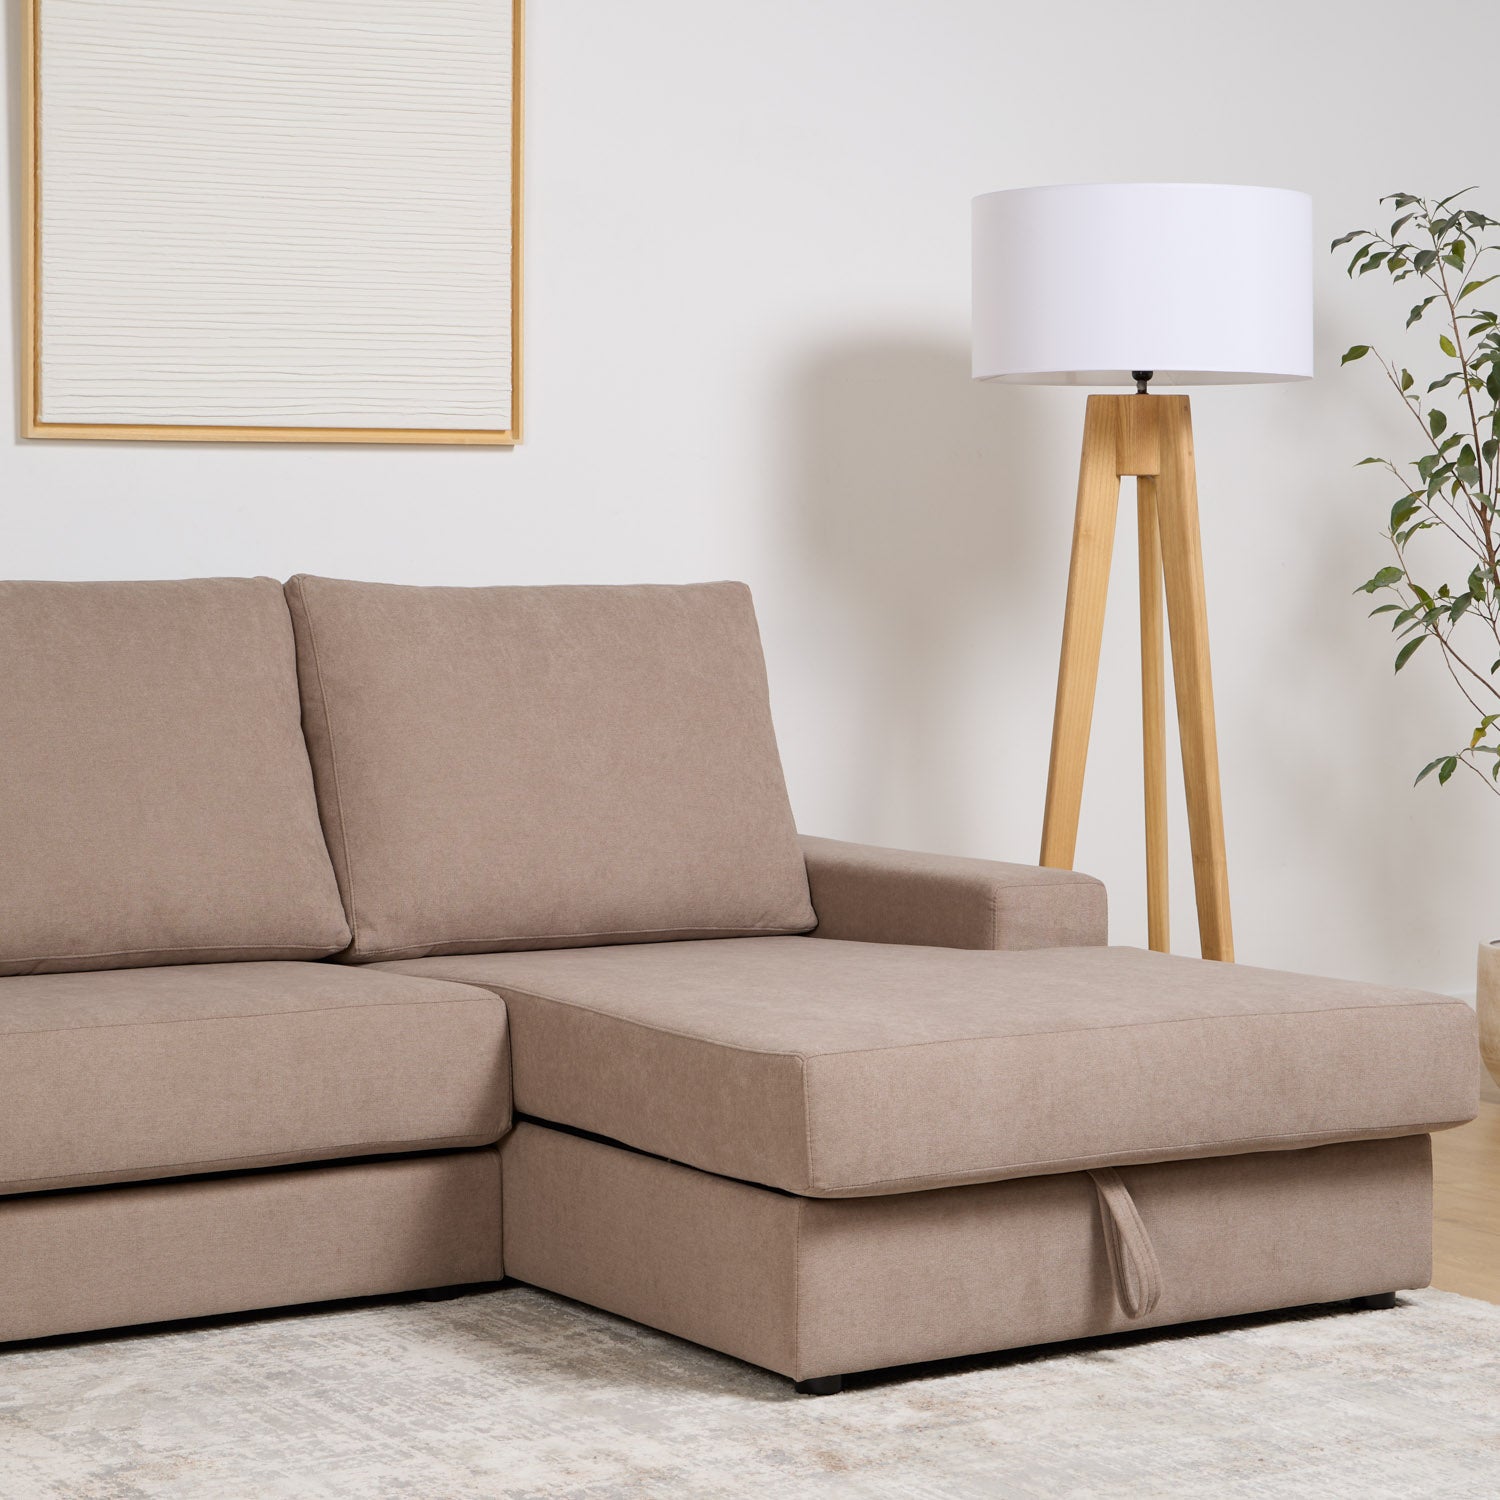 Sofa-deslizante-arcon-Berau-Detalle-chaise-longue.jpg__PID:d1138e6f-2012-42d5-ae29-8ac4705ac764